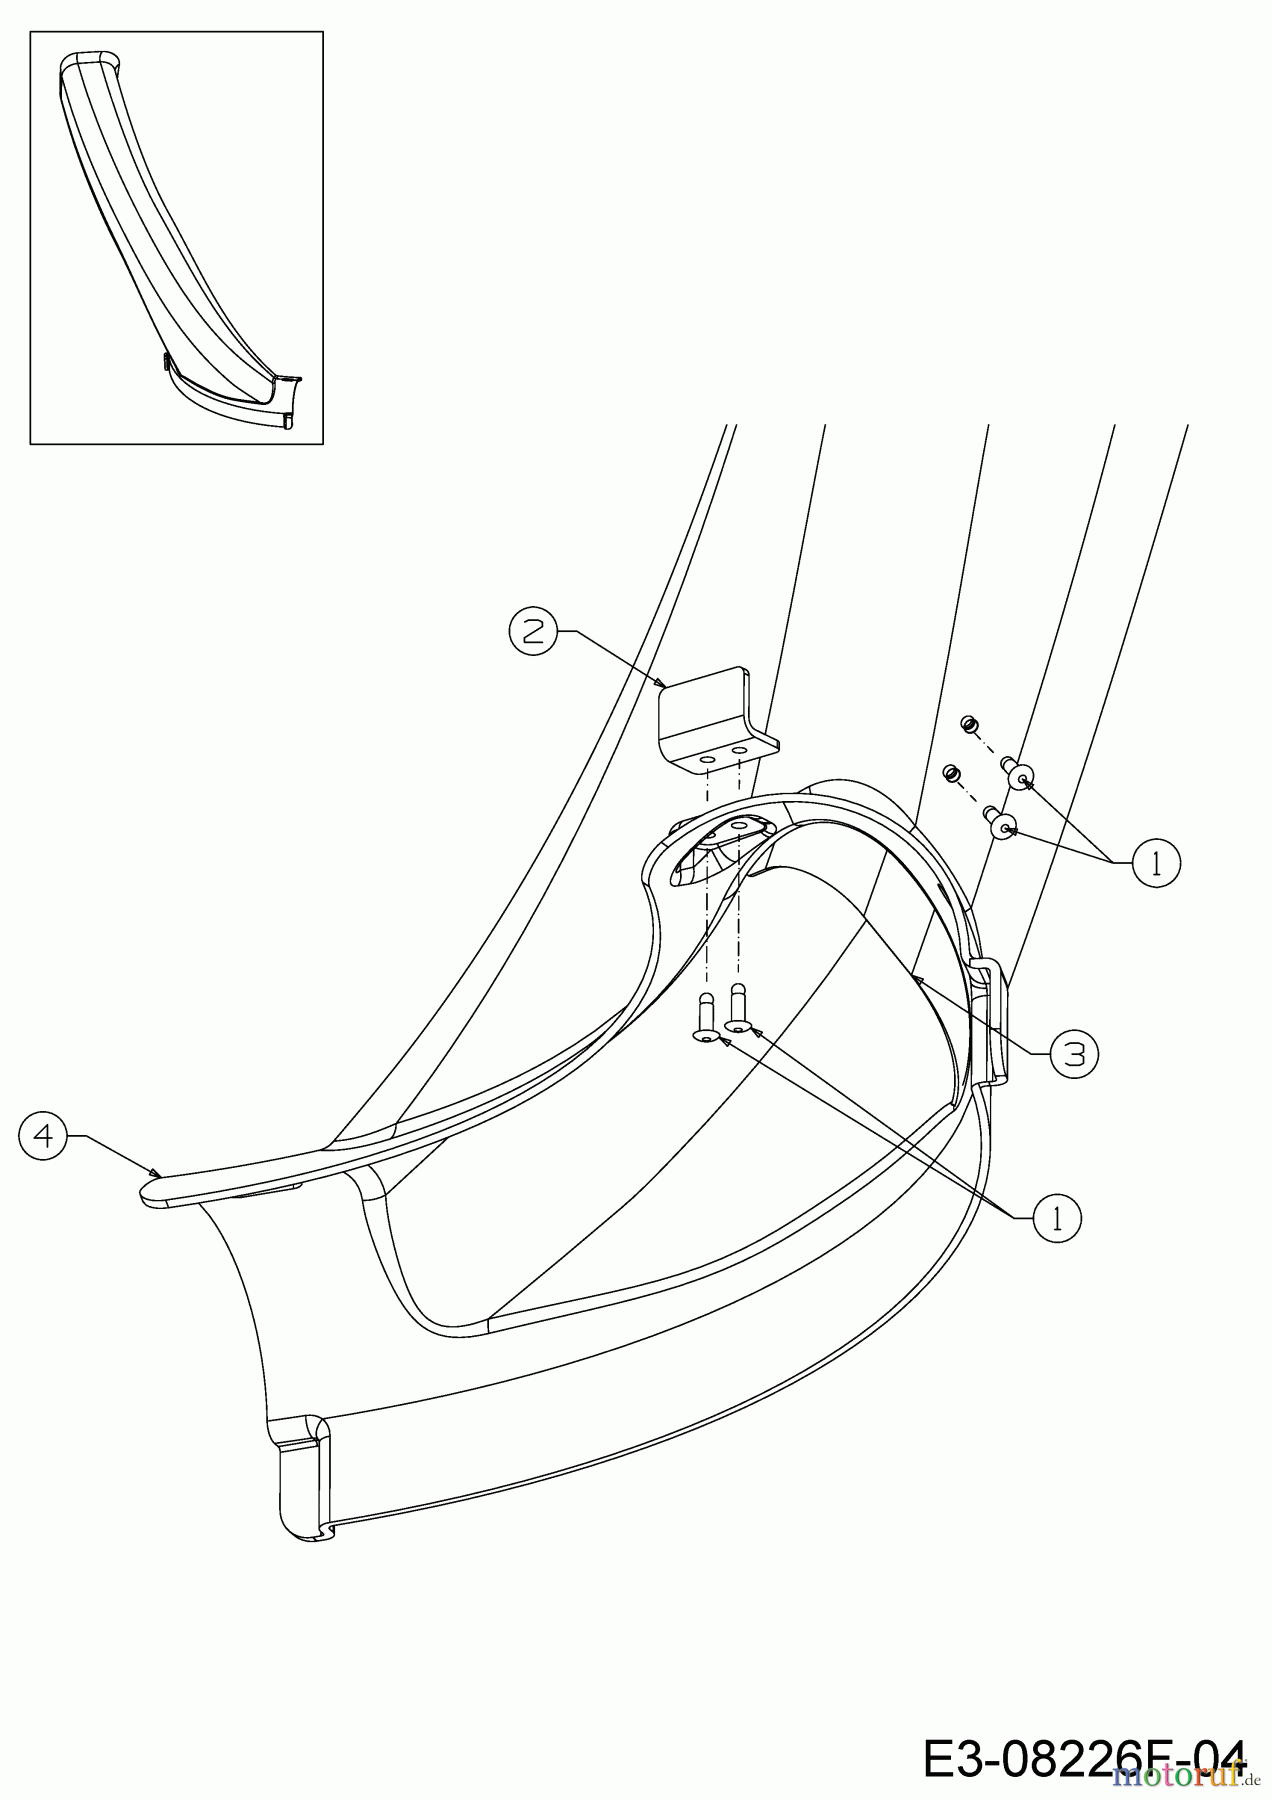  WOLF-Garten Expert Rasentraktoren Scooter Pro Hydro 13A221HD650  (2018) Auswurfschacht